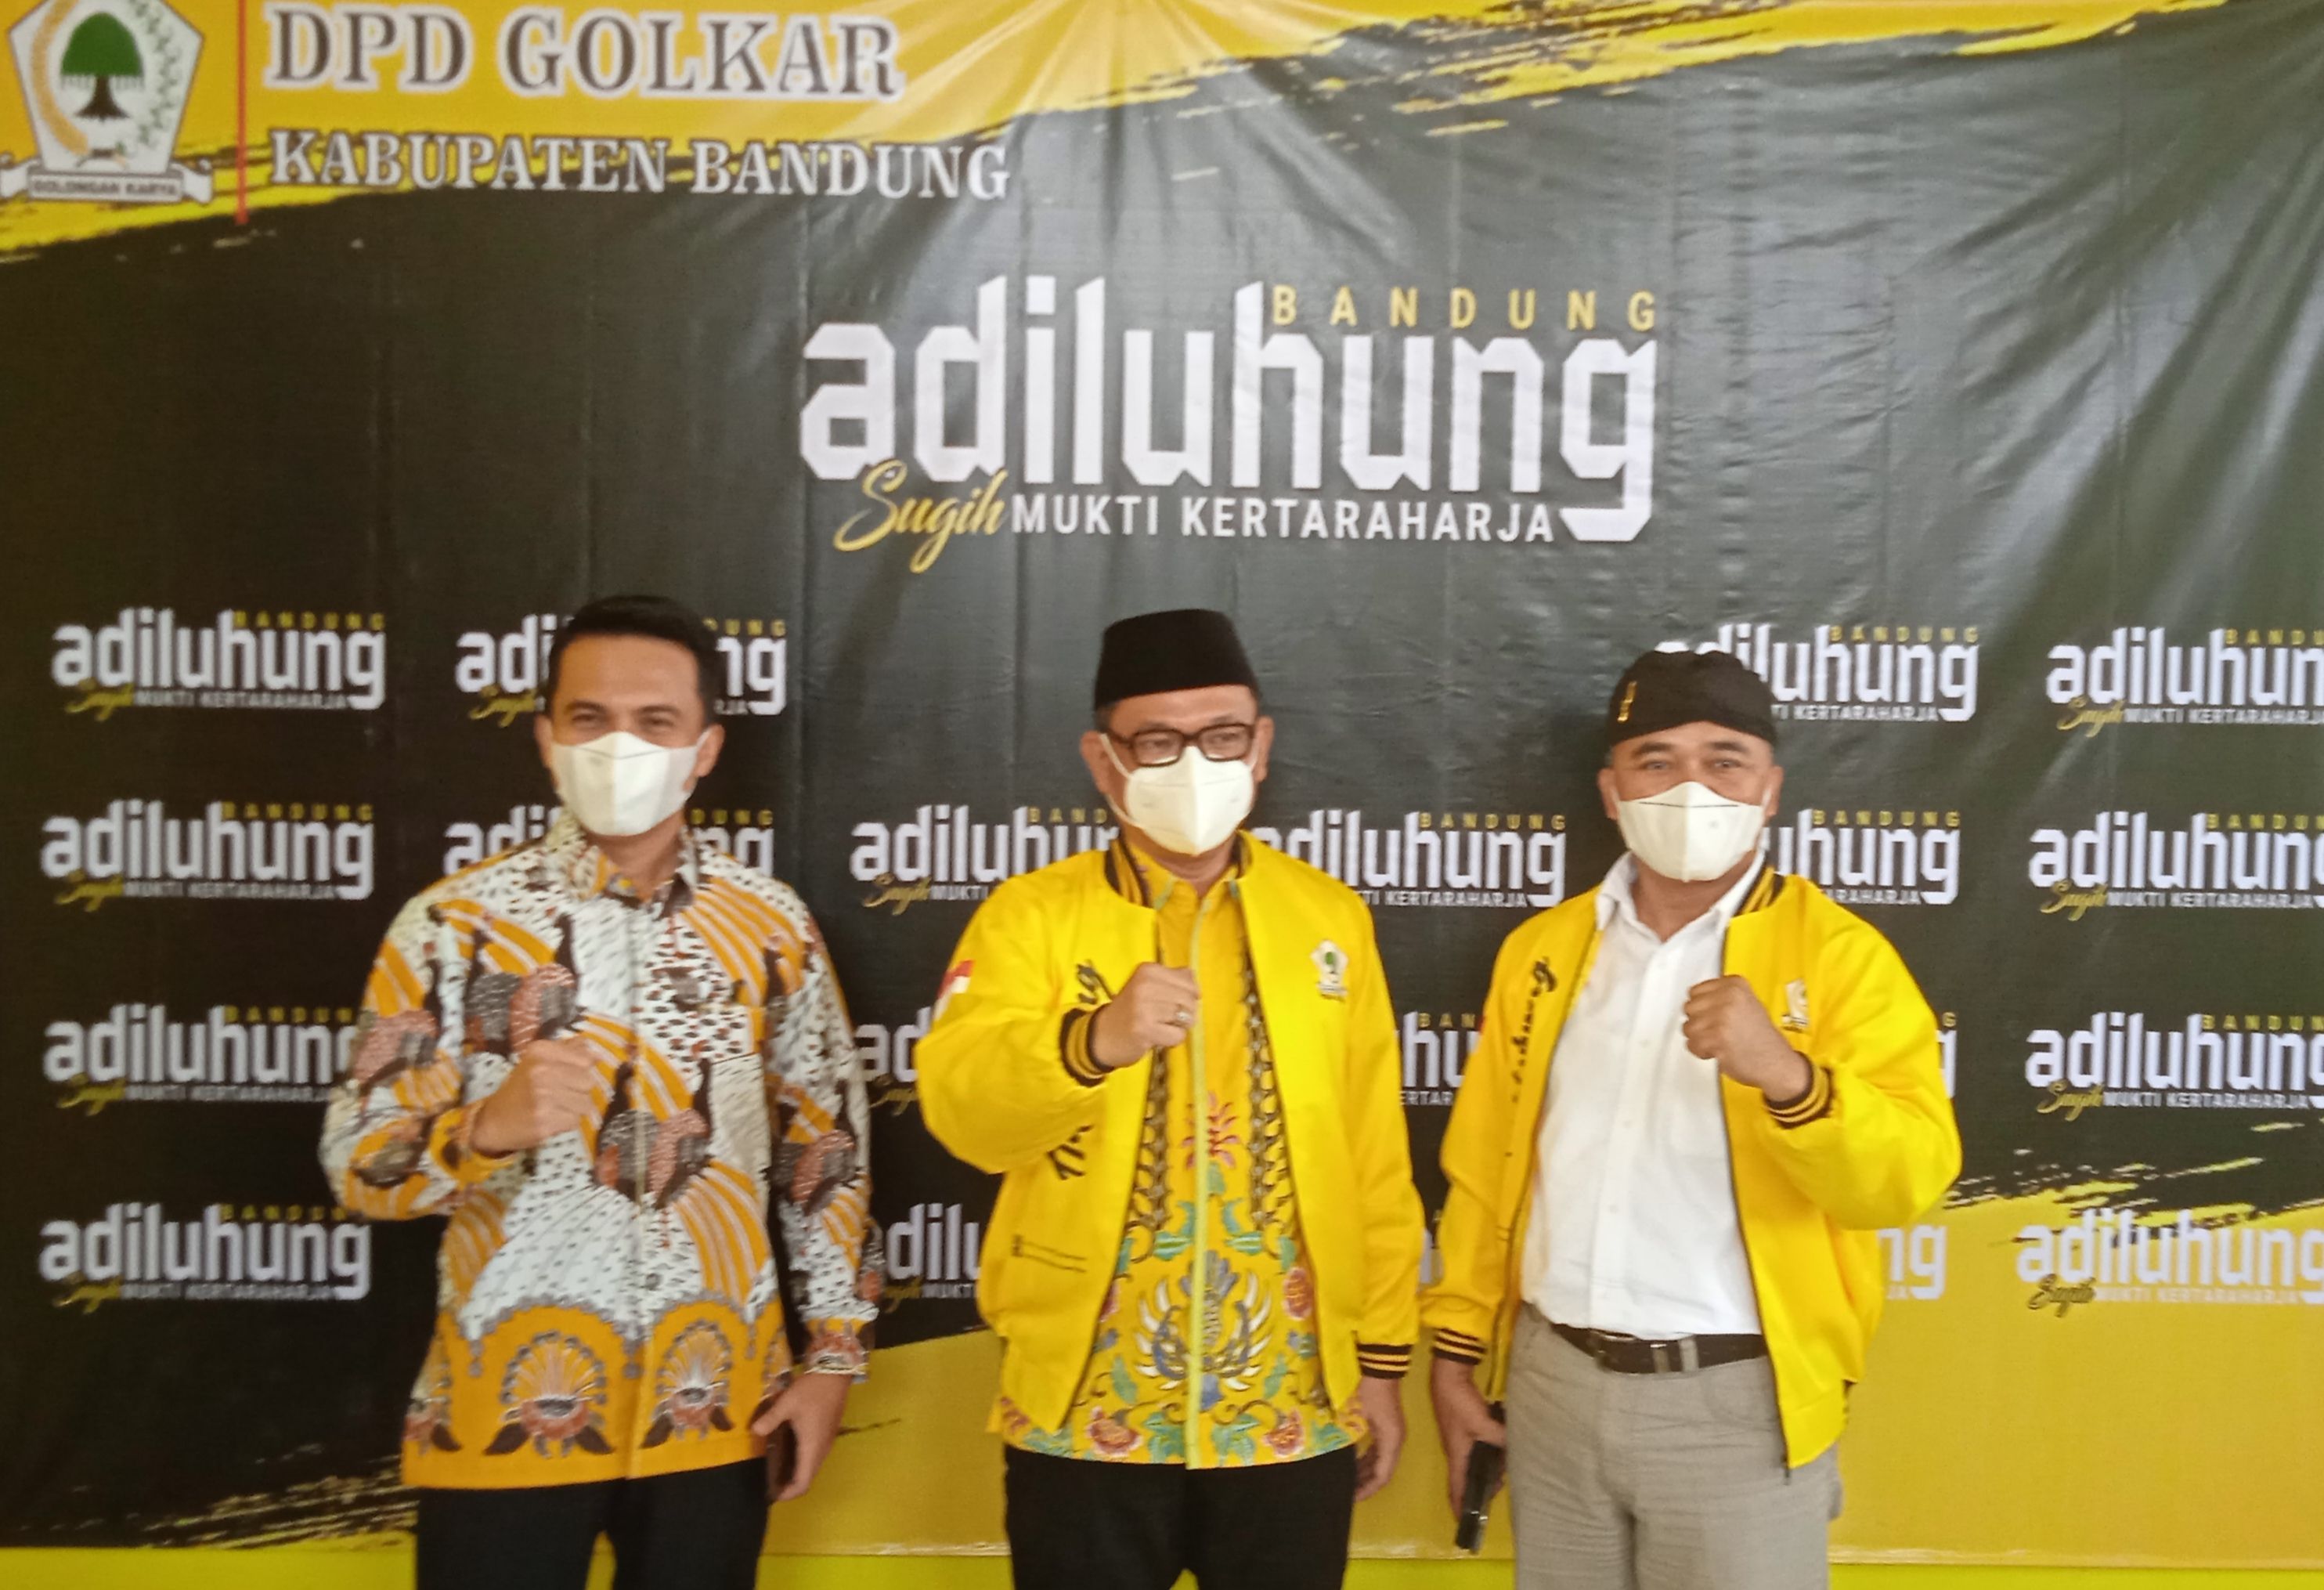 Wakil Bupati Bandung, Sahrul Gunawan (kiri) berfoto bersama Plt. Ketua DPD Golkar Jabar, Ace Hasan Syadzily (tengah) dan Ketua DPD Golkar Kabupaten Bandung, Sugianto. 